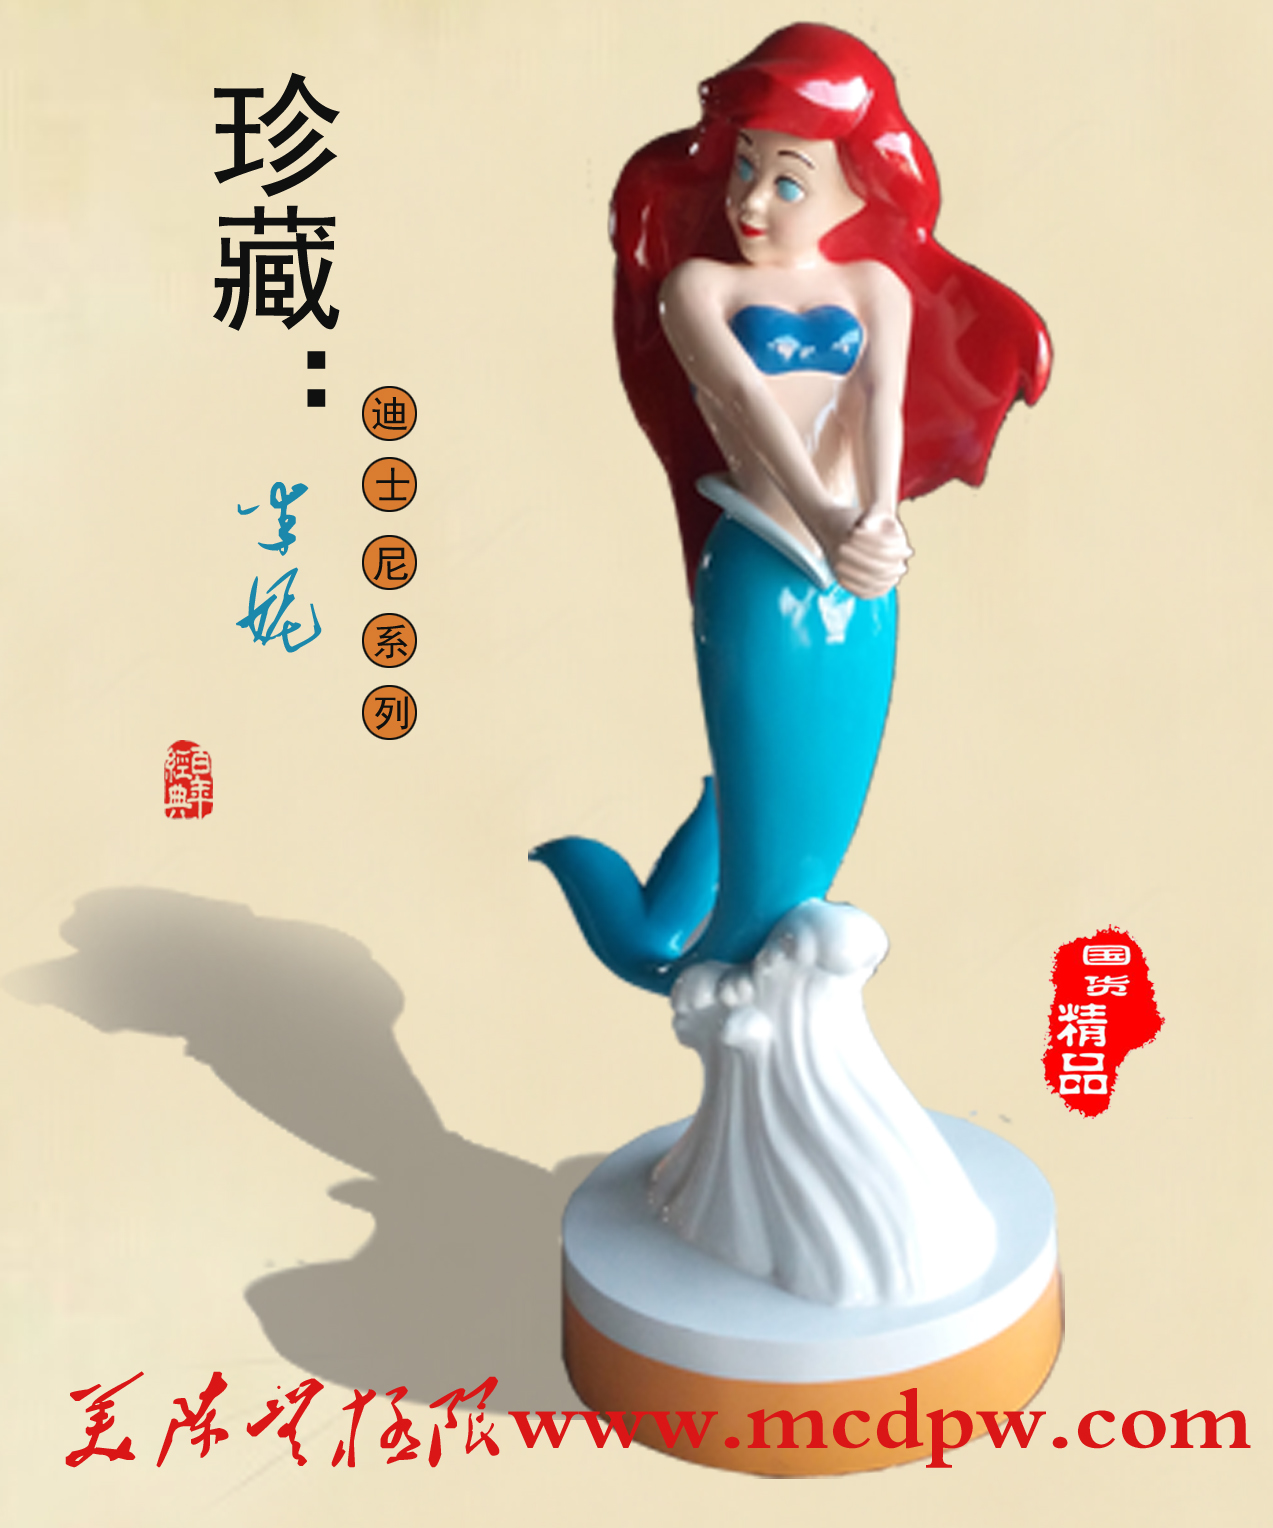 迪斯尼卡通美人鱼雕塑模型、美人鱼道具模型出租